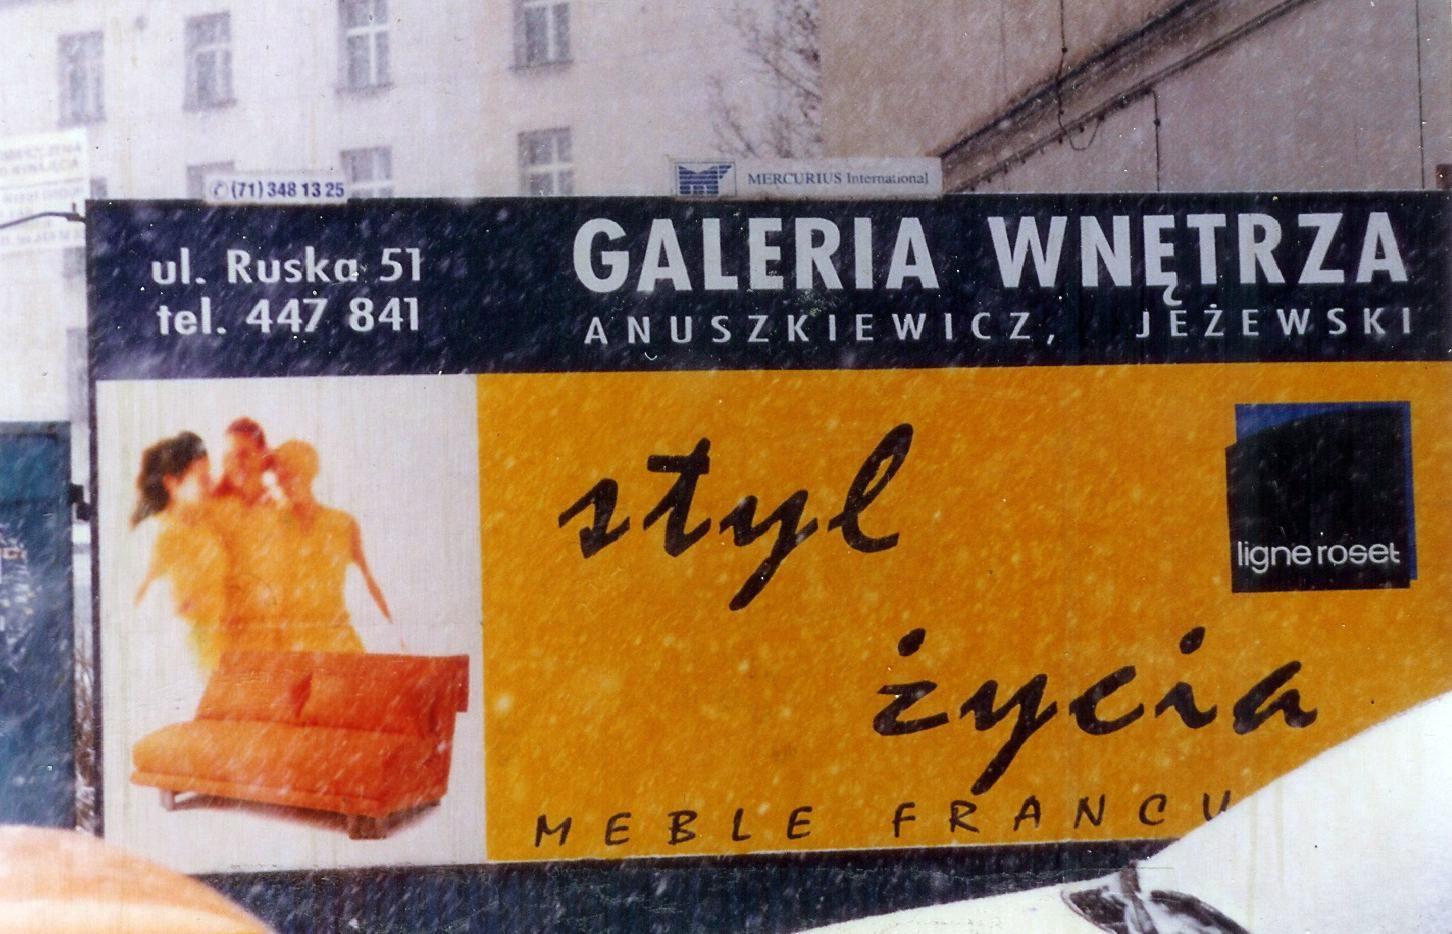 Poligrafia - offset, sitodruk, druk wielkoformatow, Wrocław, dolnośląskie